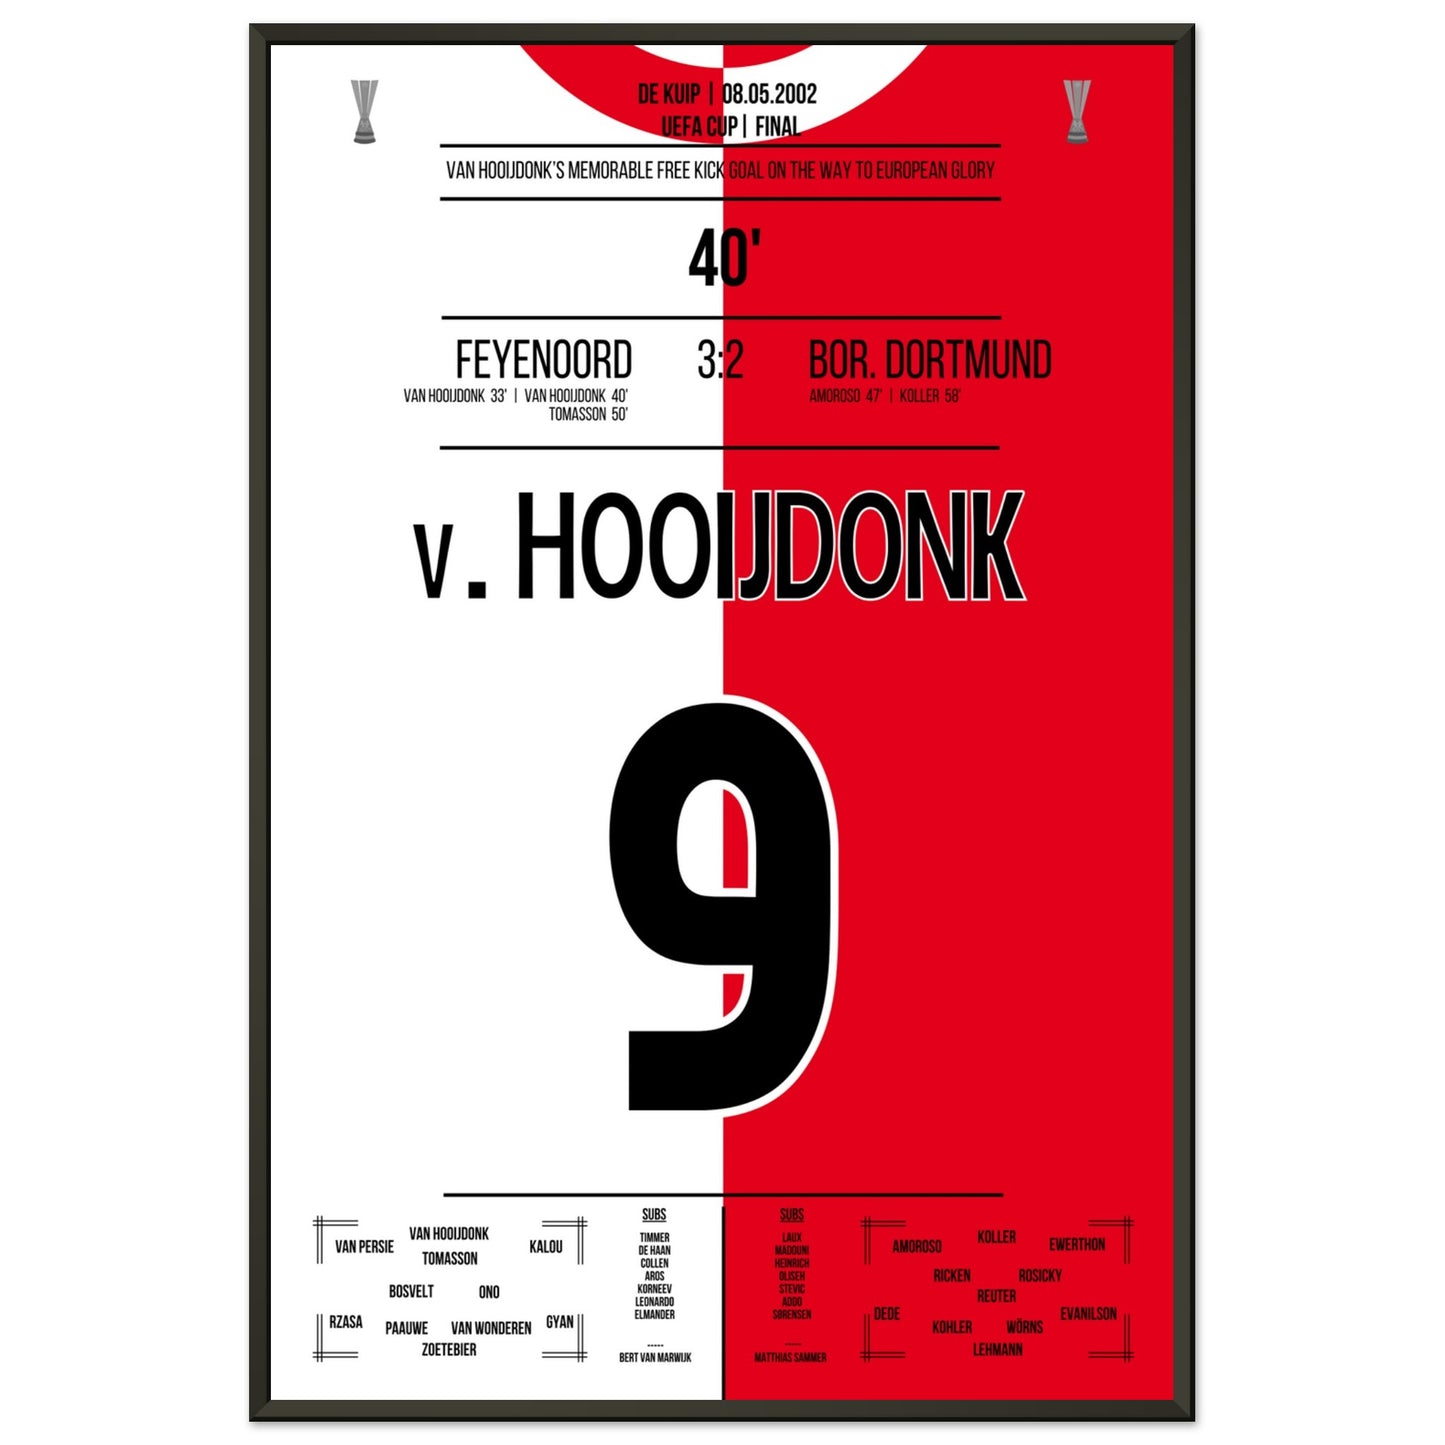 Van Hooijdonk's Freistosstor bei Feyenoord's Europapokaltriumph 2002